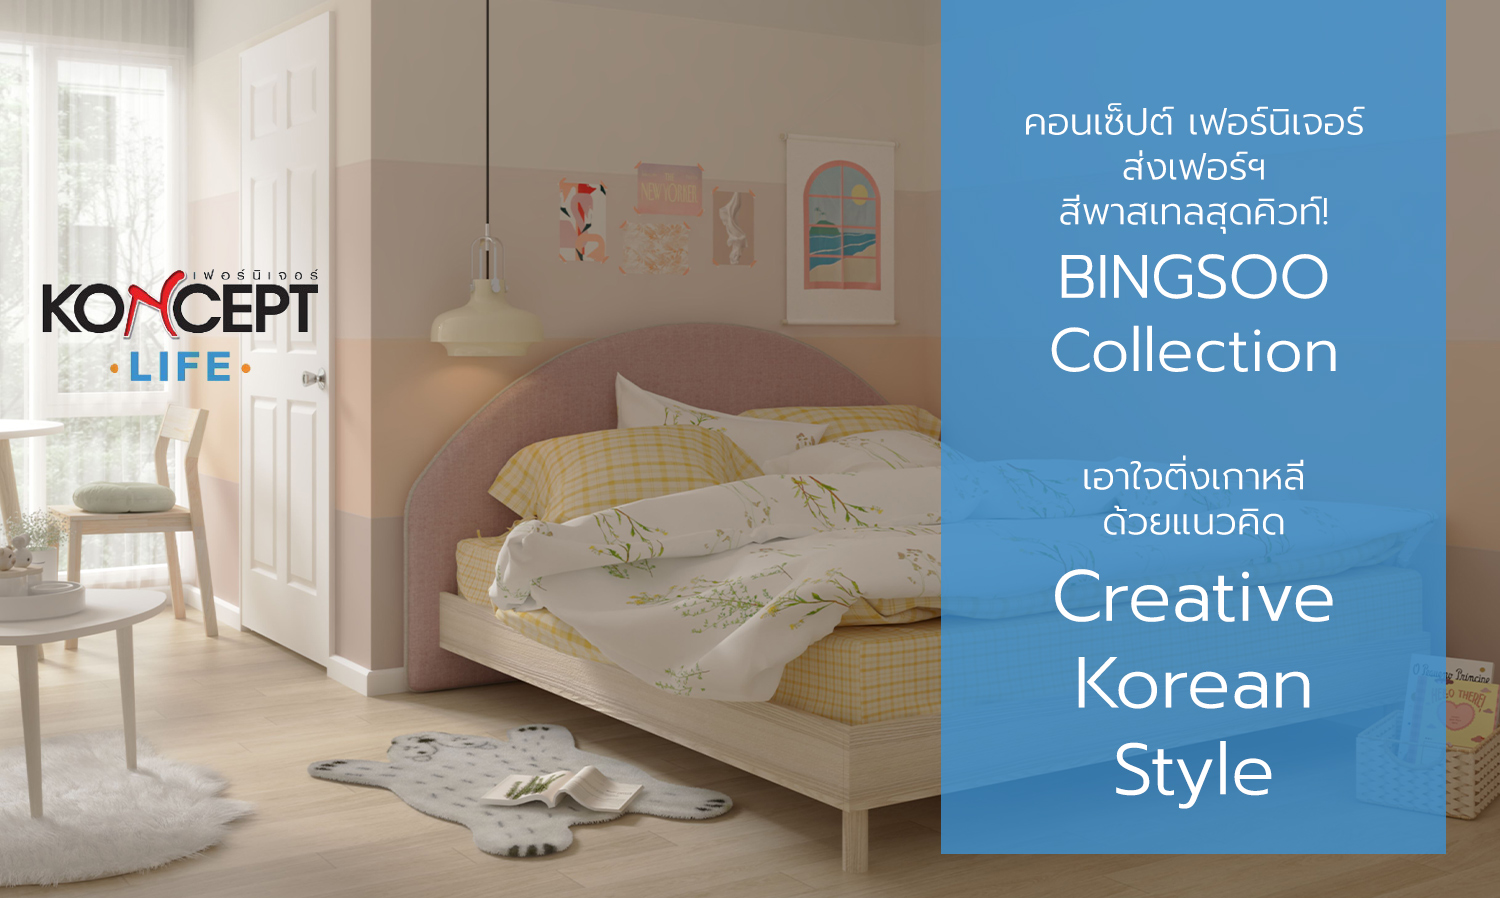 คอนเซ็ปต์ เฟอร์นิเจอร์ ส่งเฟอร์ฯ สีพาสเทลสุดคิวท์ BINGSOO Collection  เอาใจติ่งเกาหลี ด้วยแนวคิด Creative Korean Style